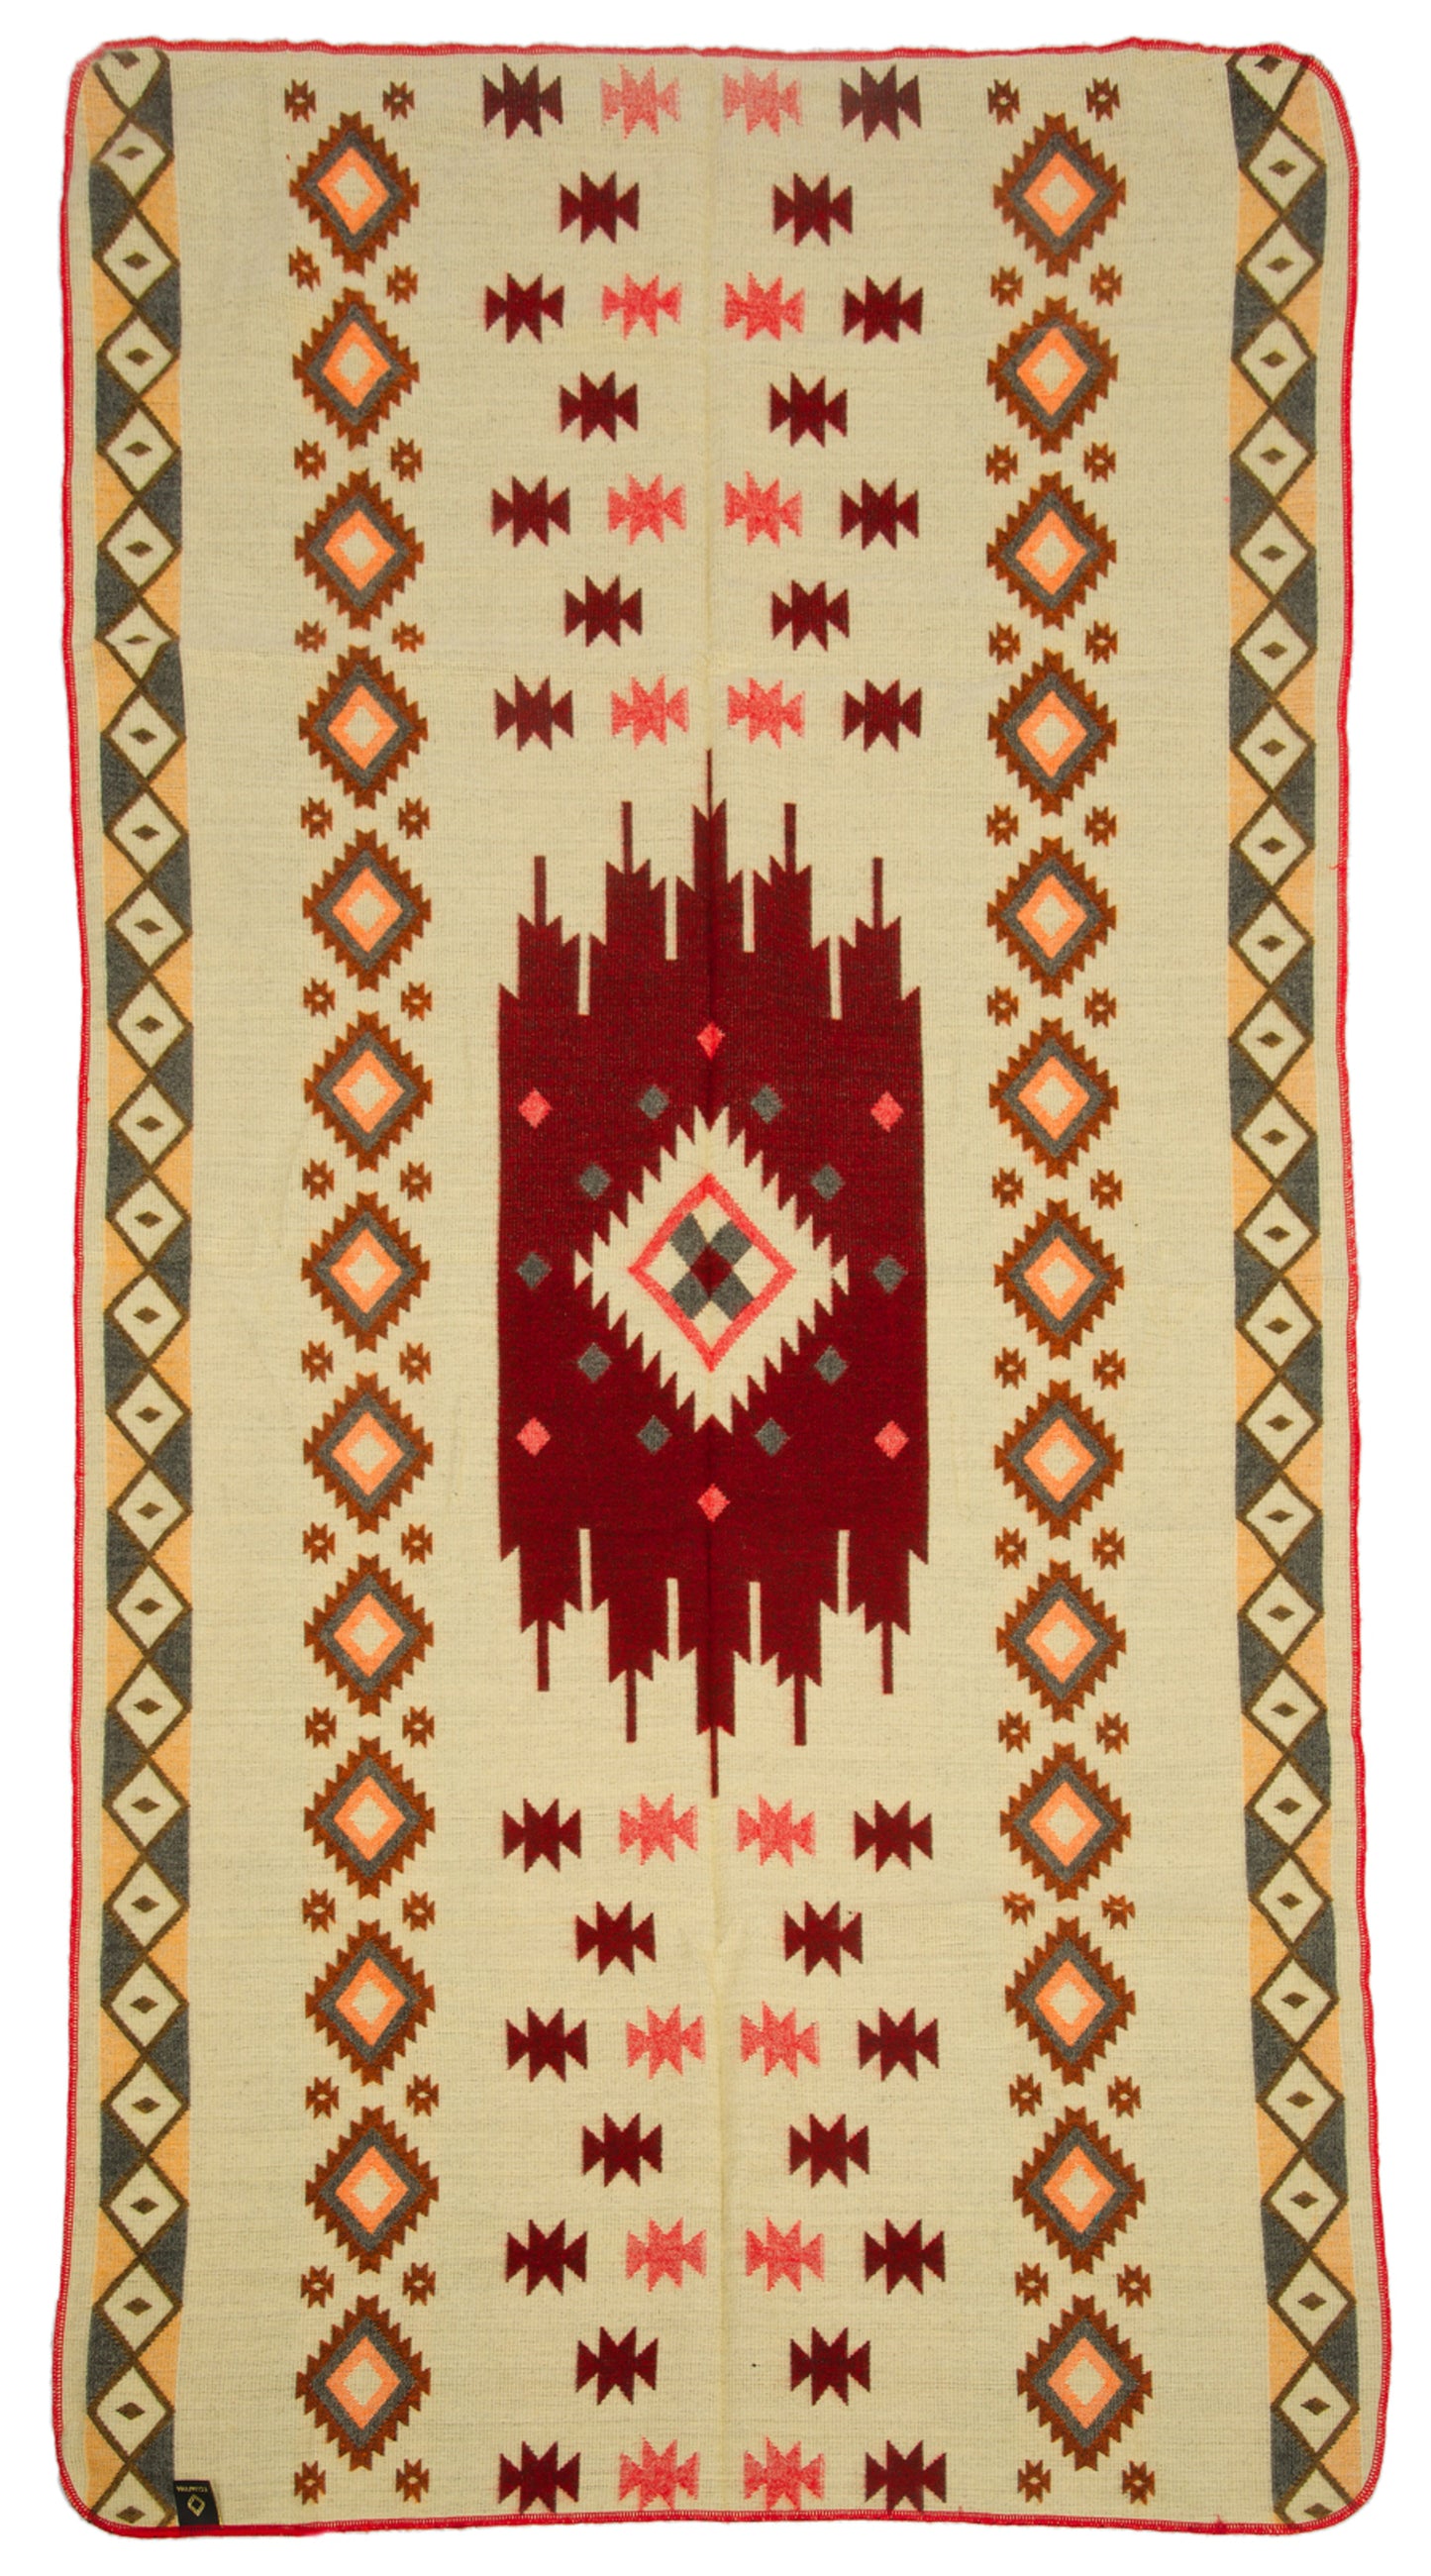 Ecuadorian alpaca mini blanketn | native blanket | Mini Quilotoa Red